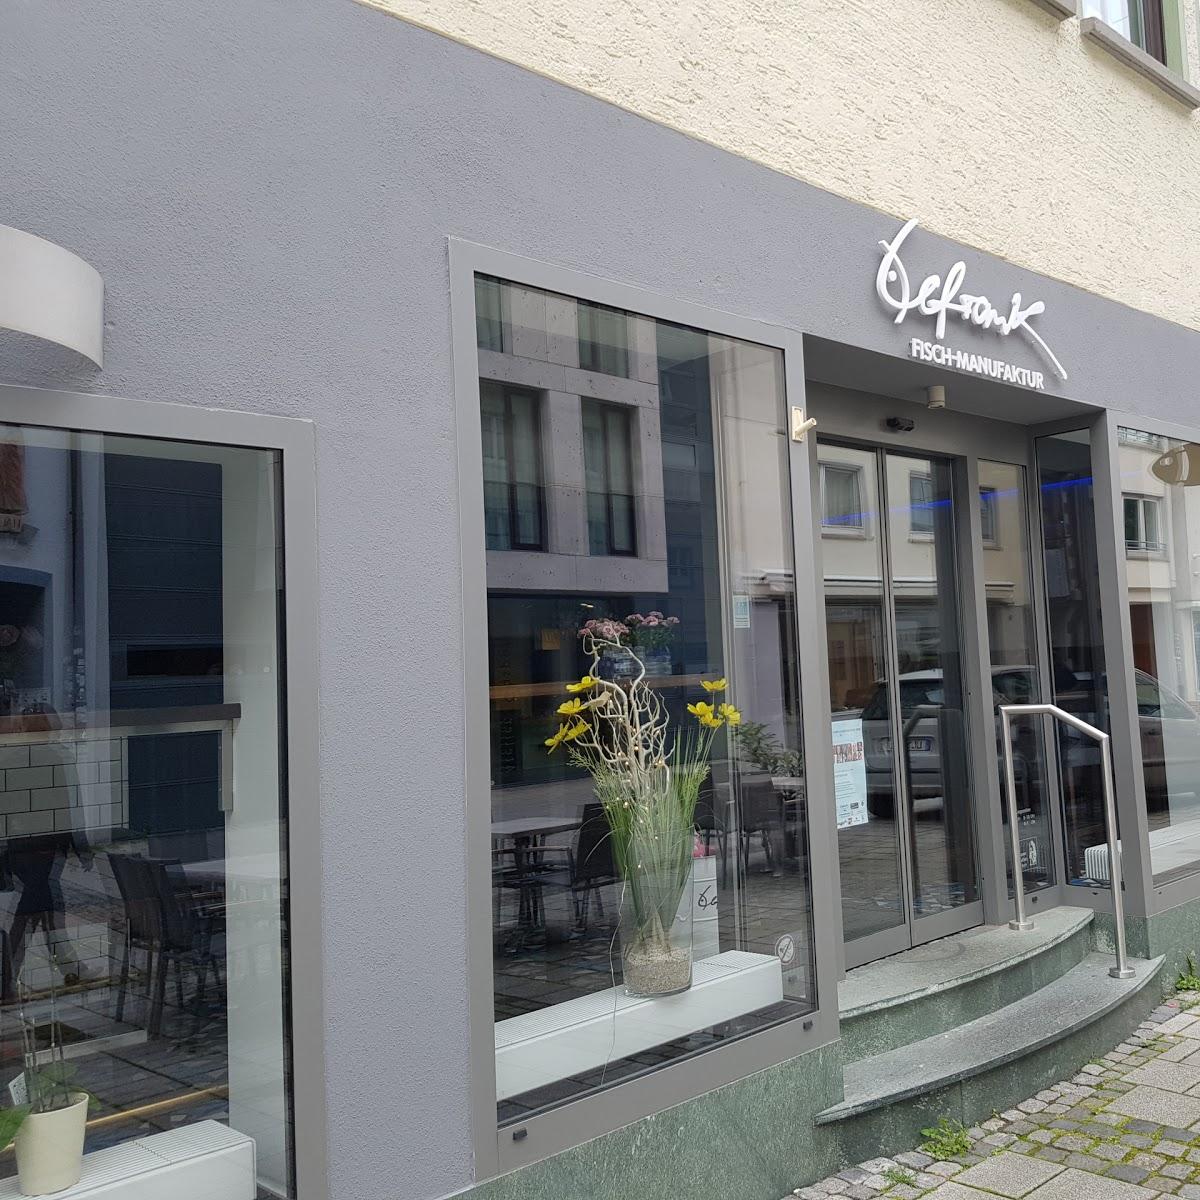 Restaurant "Lefrank Fisch-Manufaktur" in Ulm